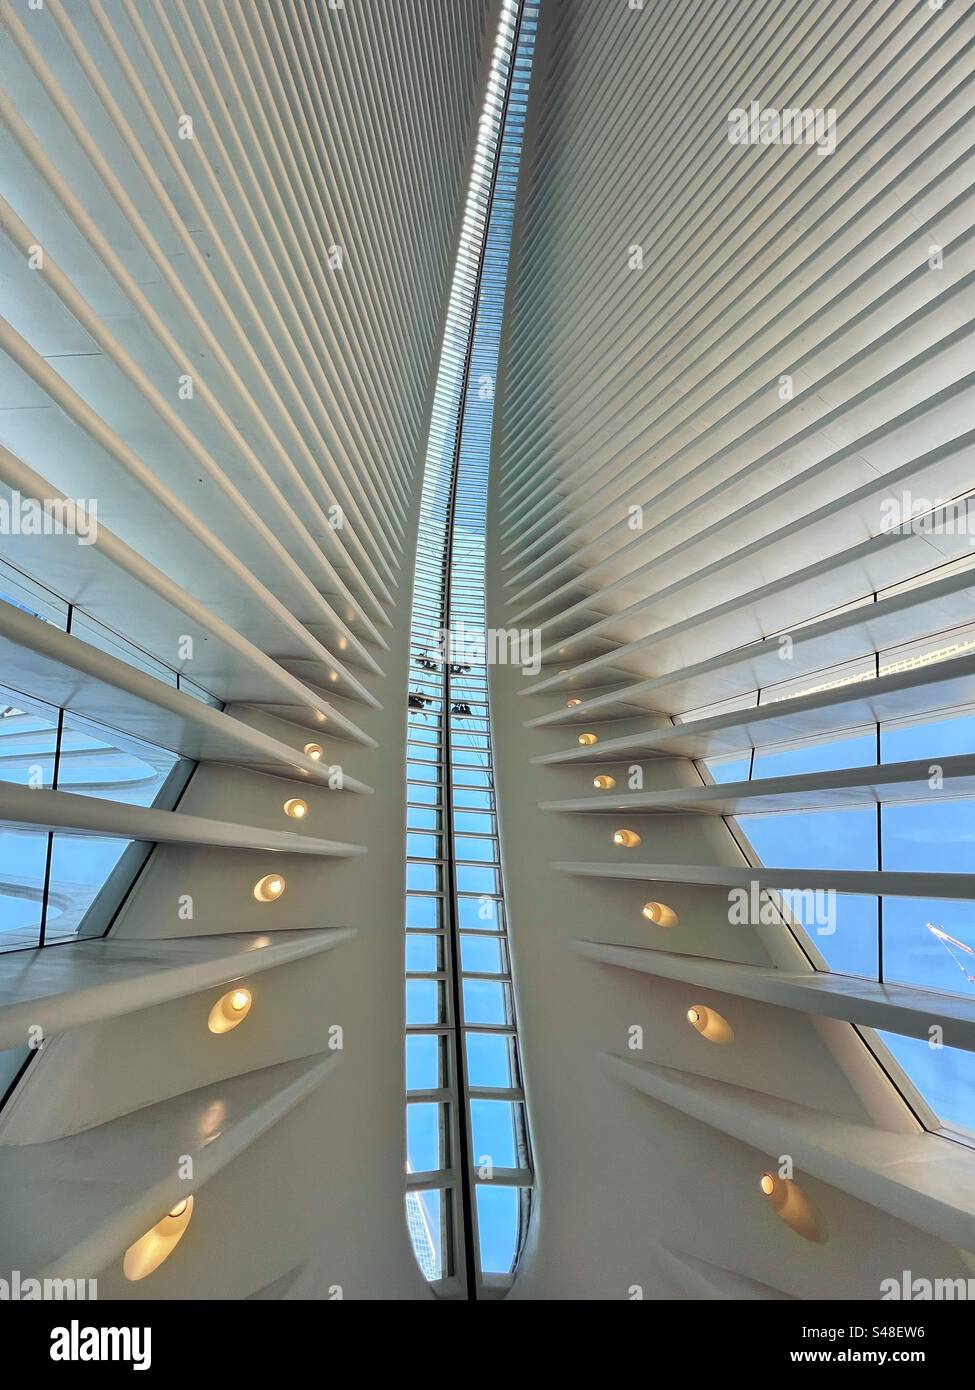 Tetto dell'edificio Oculus a New York con appaltatori che lavorano sul tetto di vetro. Fa parte del complesso del World Trade Center e della stazione terminale per la rete ferroviaria PATH. Foto Stock